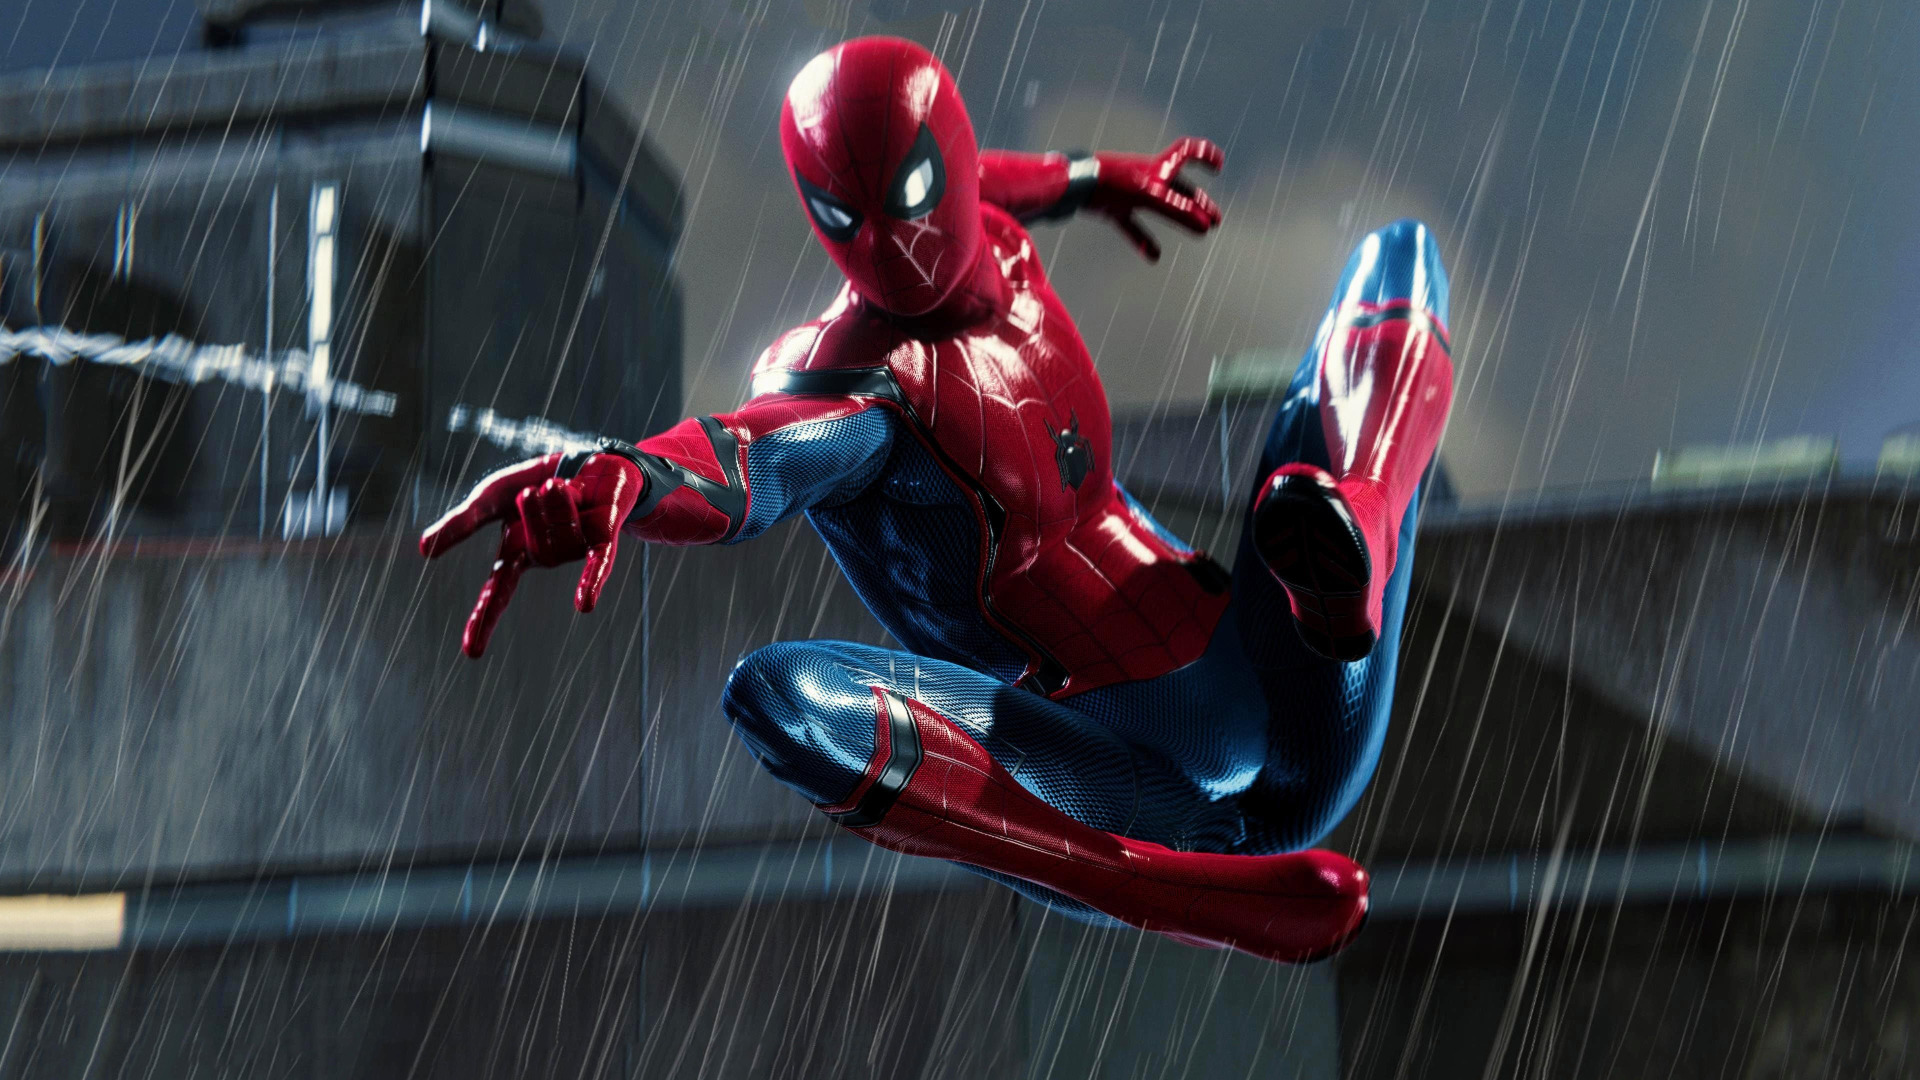 Ð¡ÐºÐ°Ñ‡Ð°Ñ‚ÑŒ Ð¾Ð±Ð¾Ð¸ Rain, Spider Man, PS4, Playstation 4 Pro, Marvel's Spider-Man, Ñ€Ð°Ð·Ð´ÐµÐ» Ð¸Ð³...